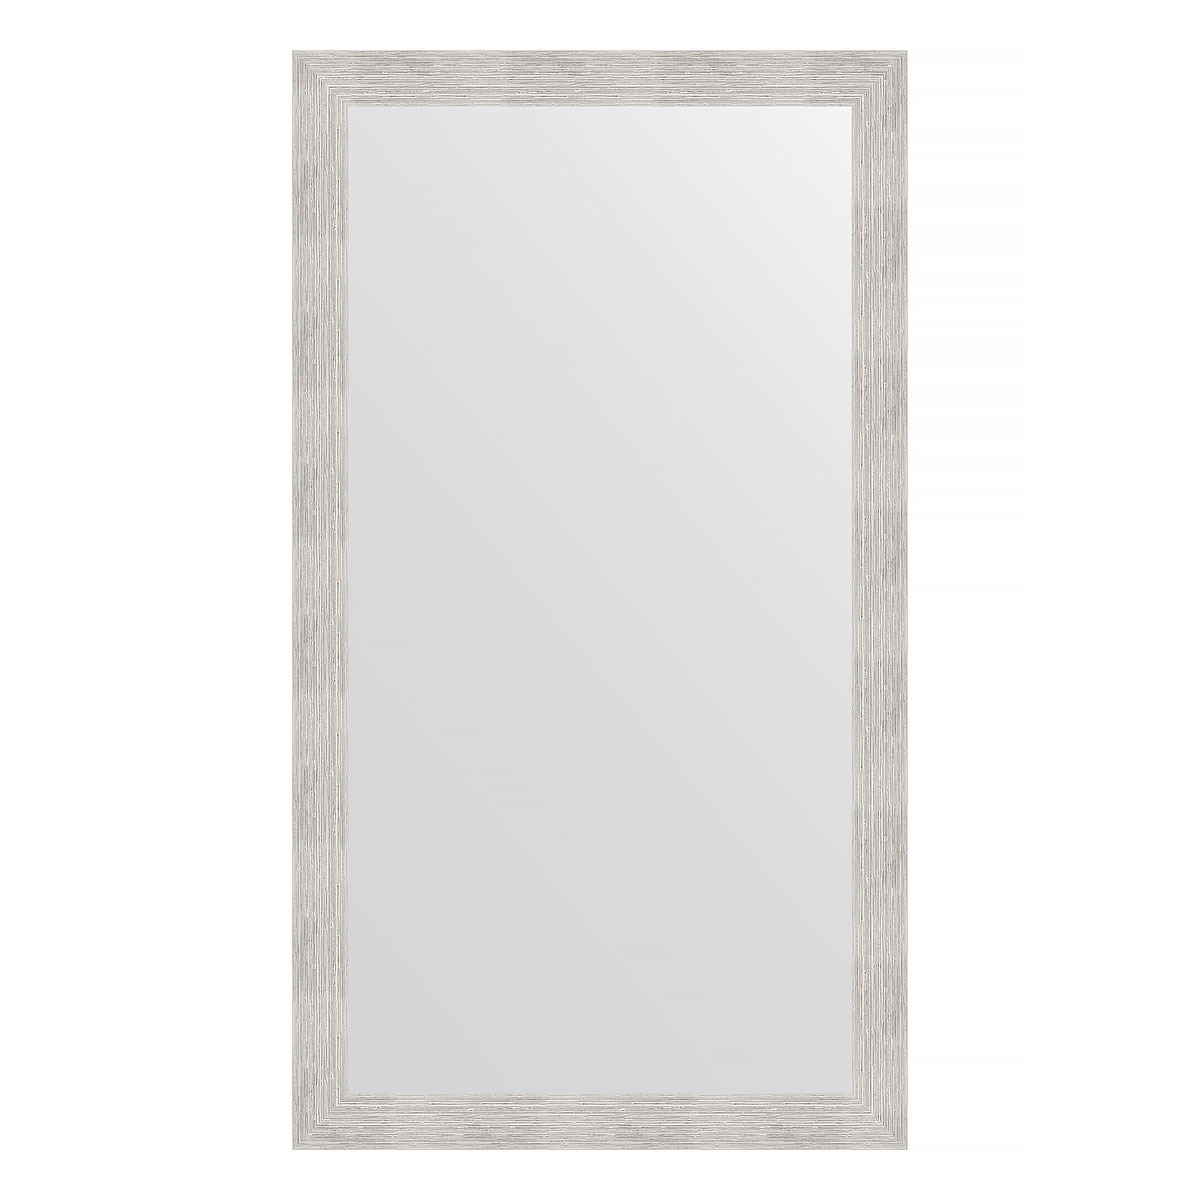 Зеркало в багетной раме Evoform серебряный дождь 70 мм 76х136 см зеркало в багетной раме evoform орех 65 мм 76х136 см